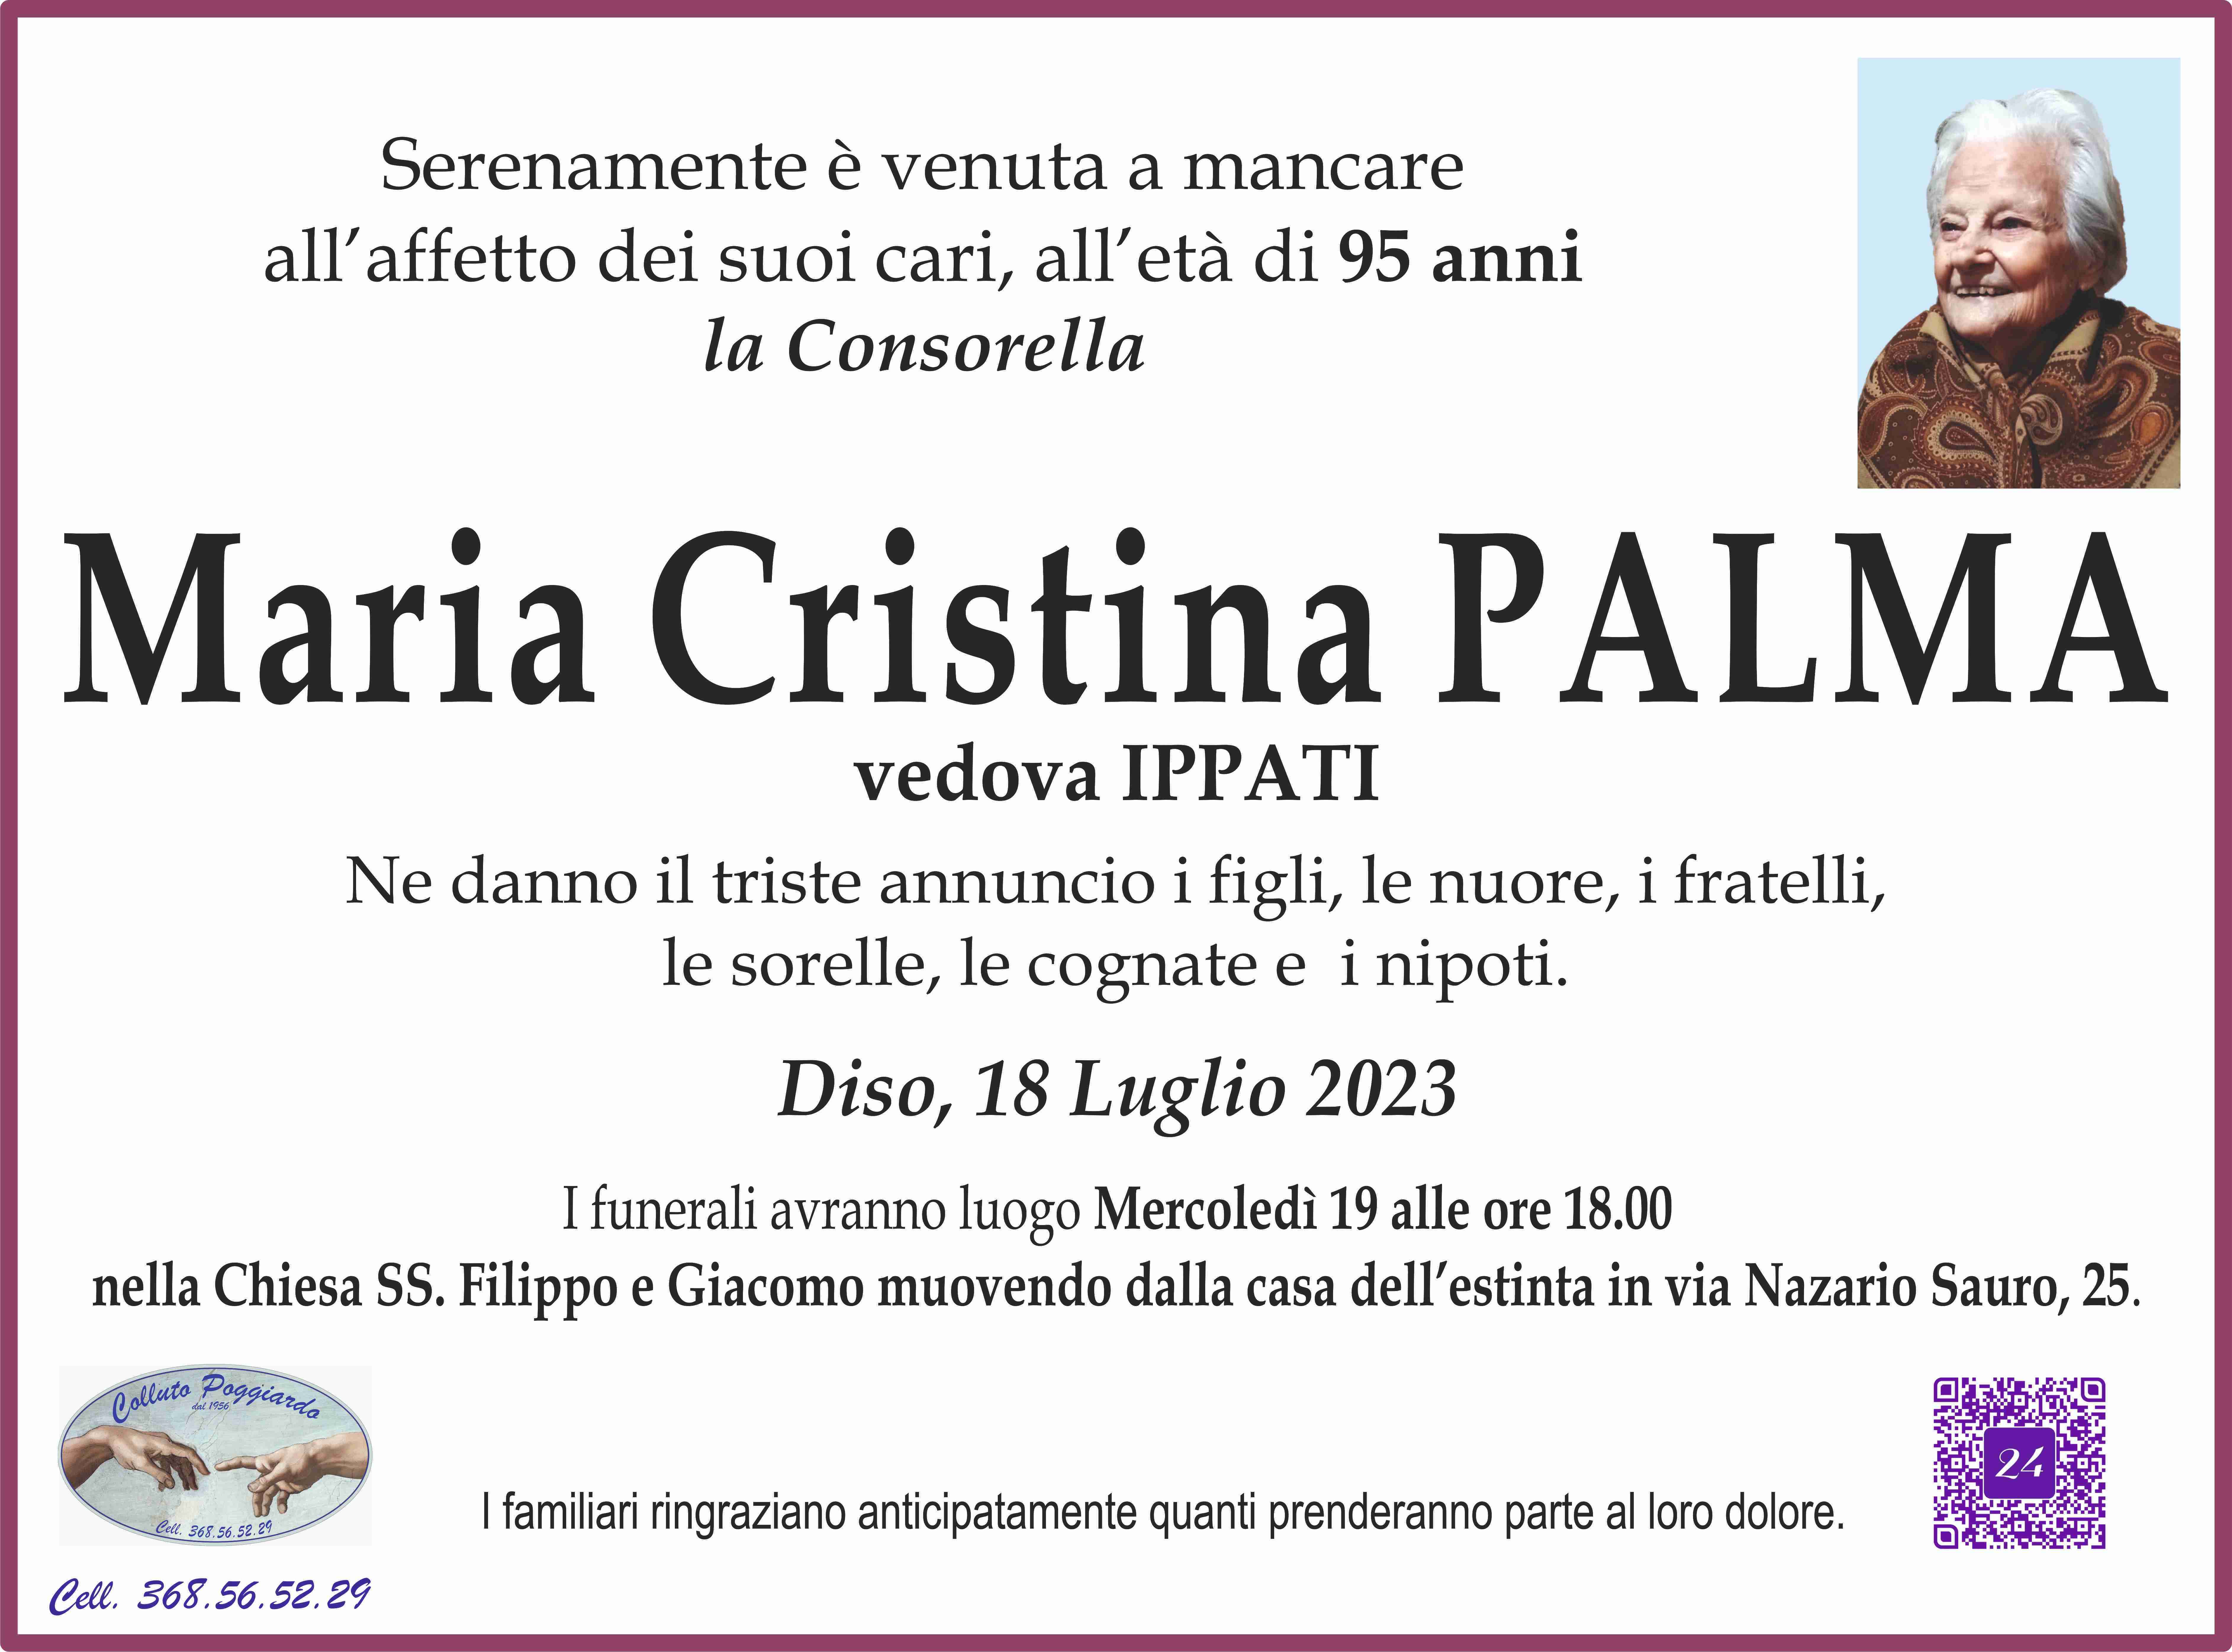 Maria Cristina Palma